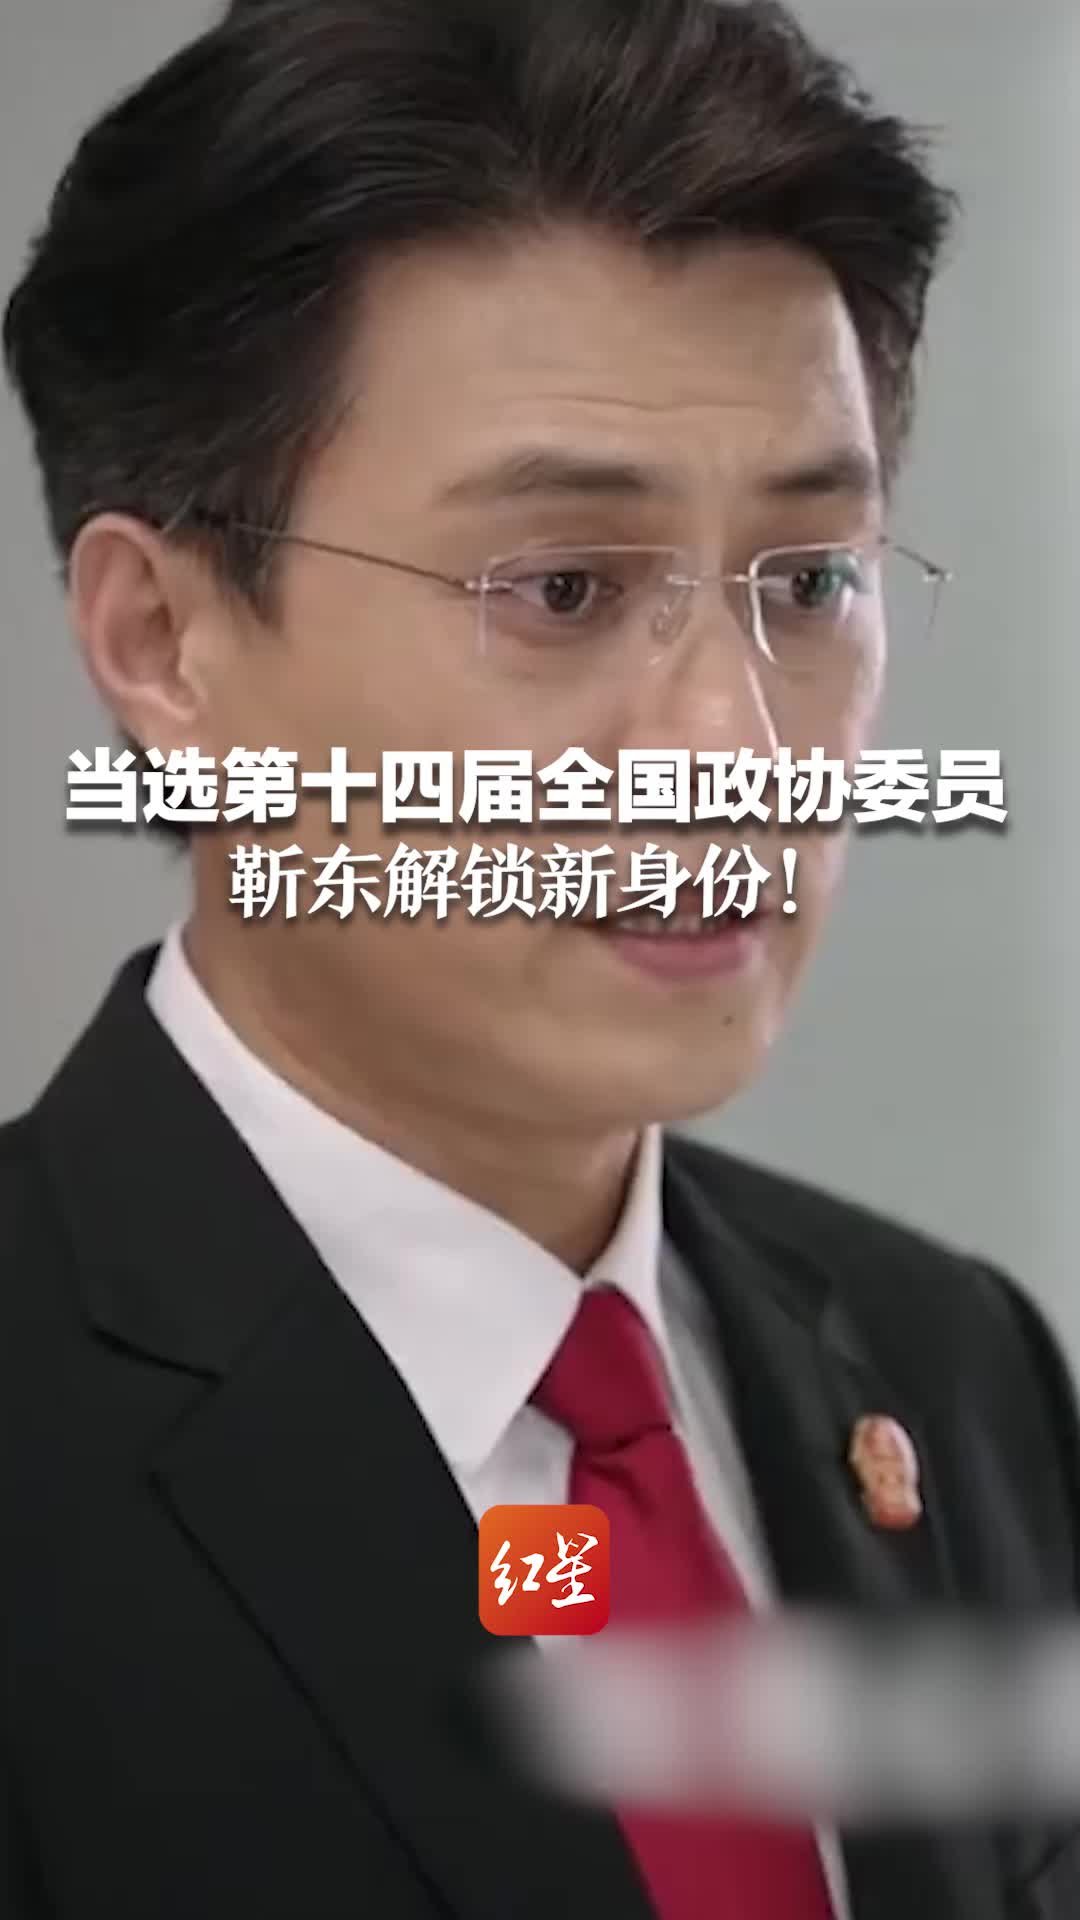 当选第十四届全国政协委员，靳东解锁新身份